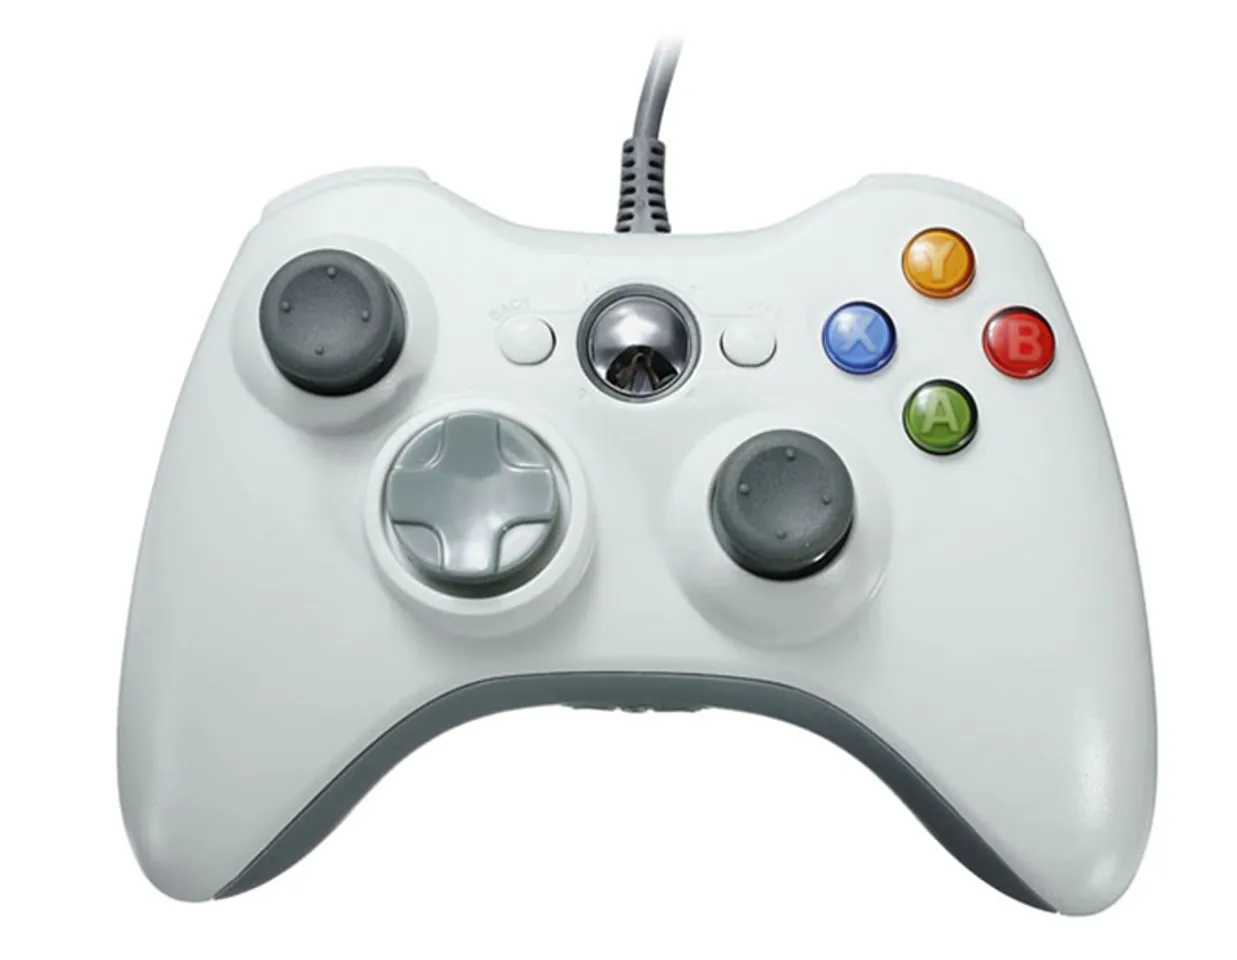 Tay cầm chơi game Microsoft Xbox 360 màu trắng